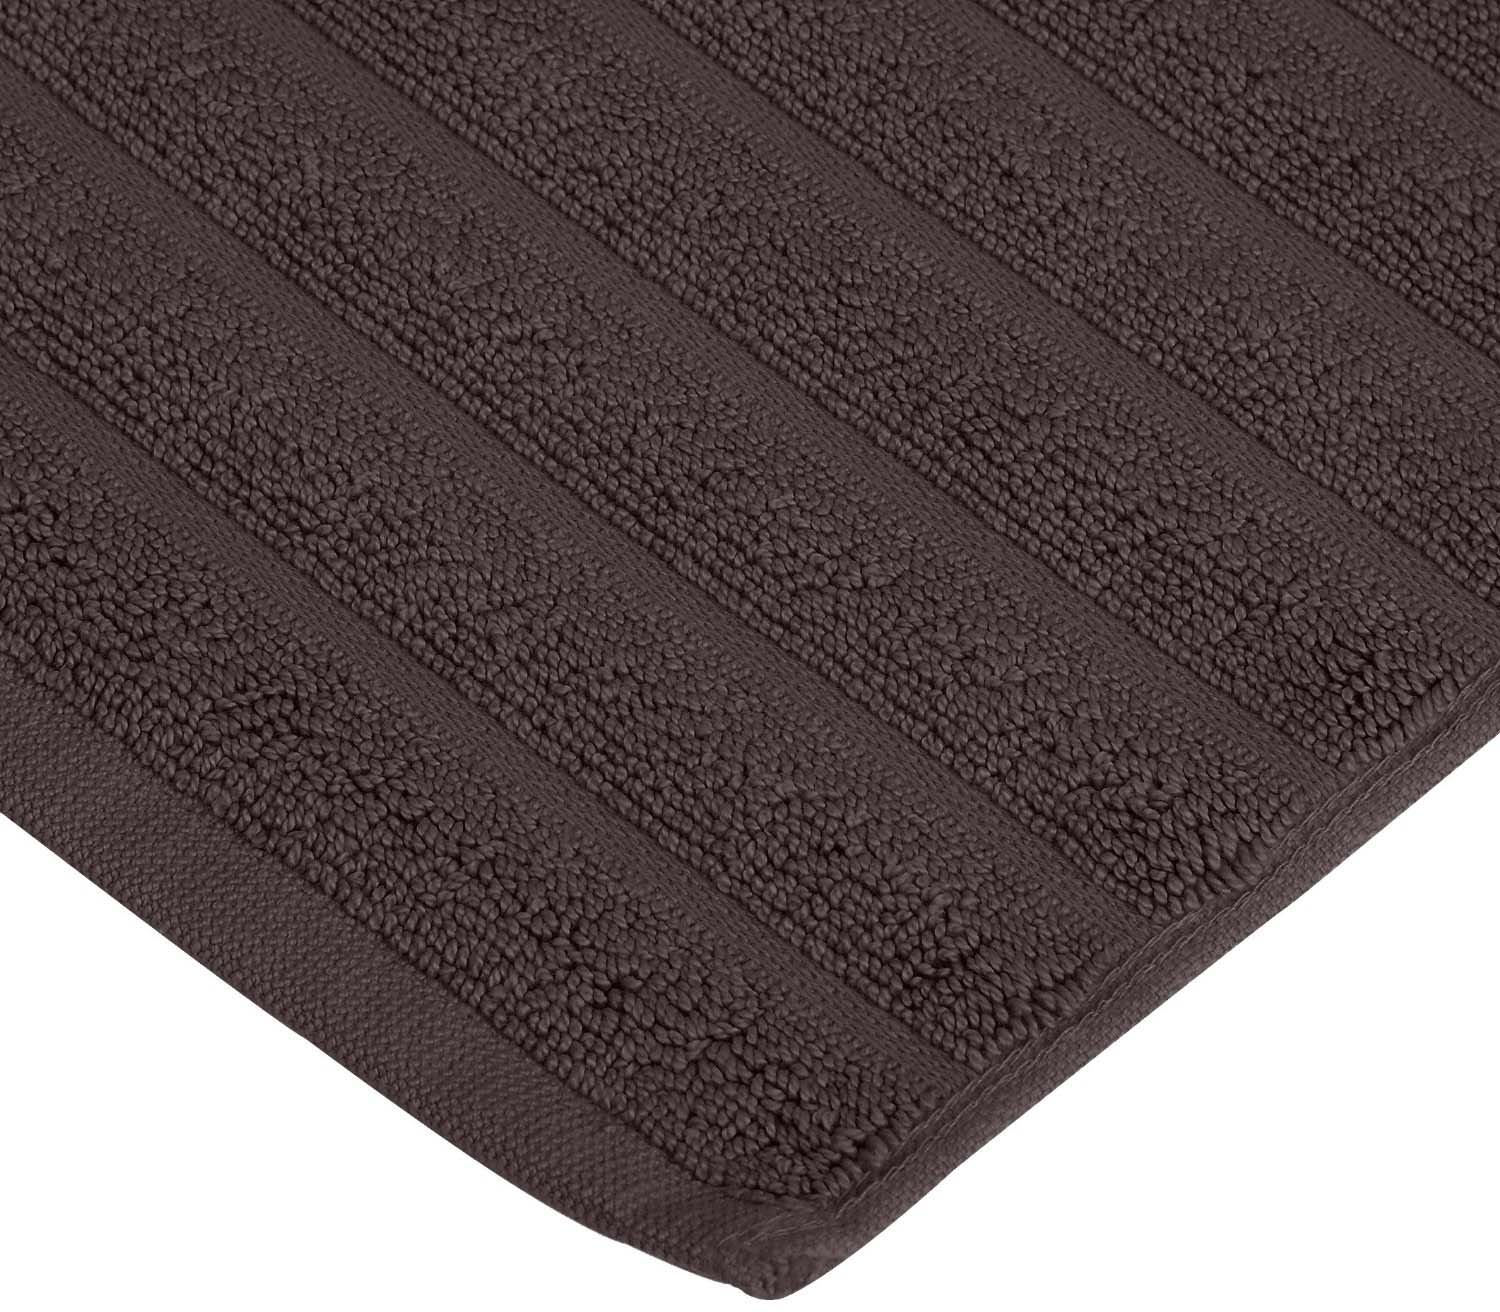 Lined 100% Cotton 1000 GSM 2-Piece Bath Mat Set - Black